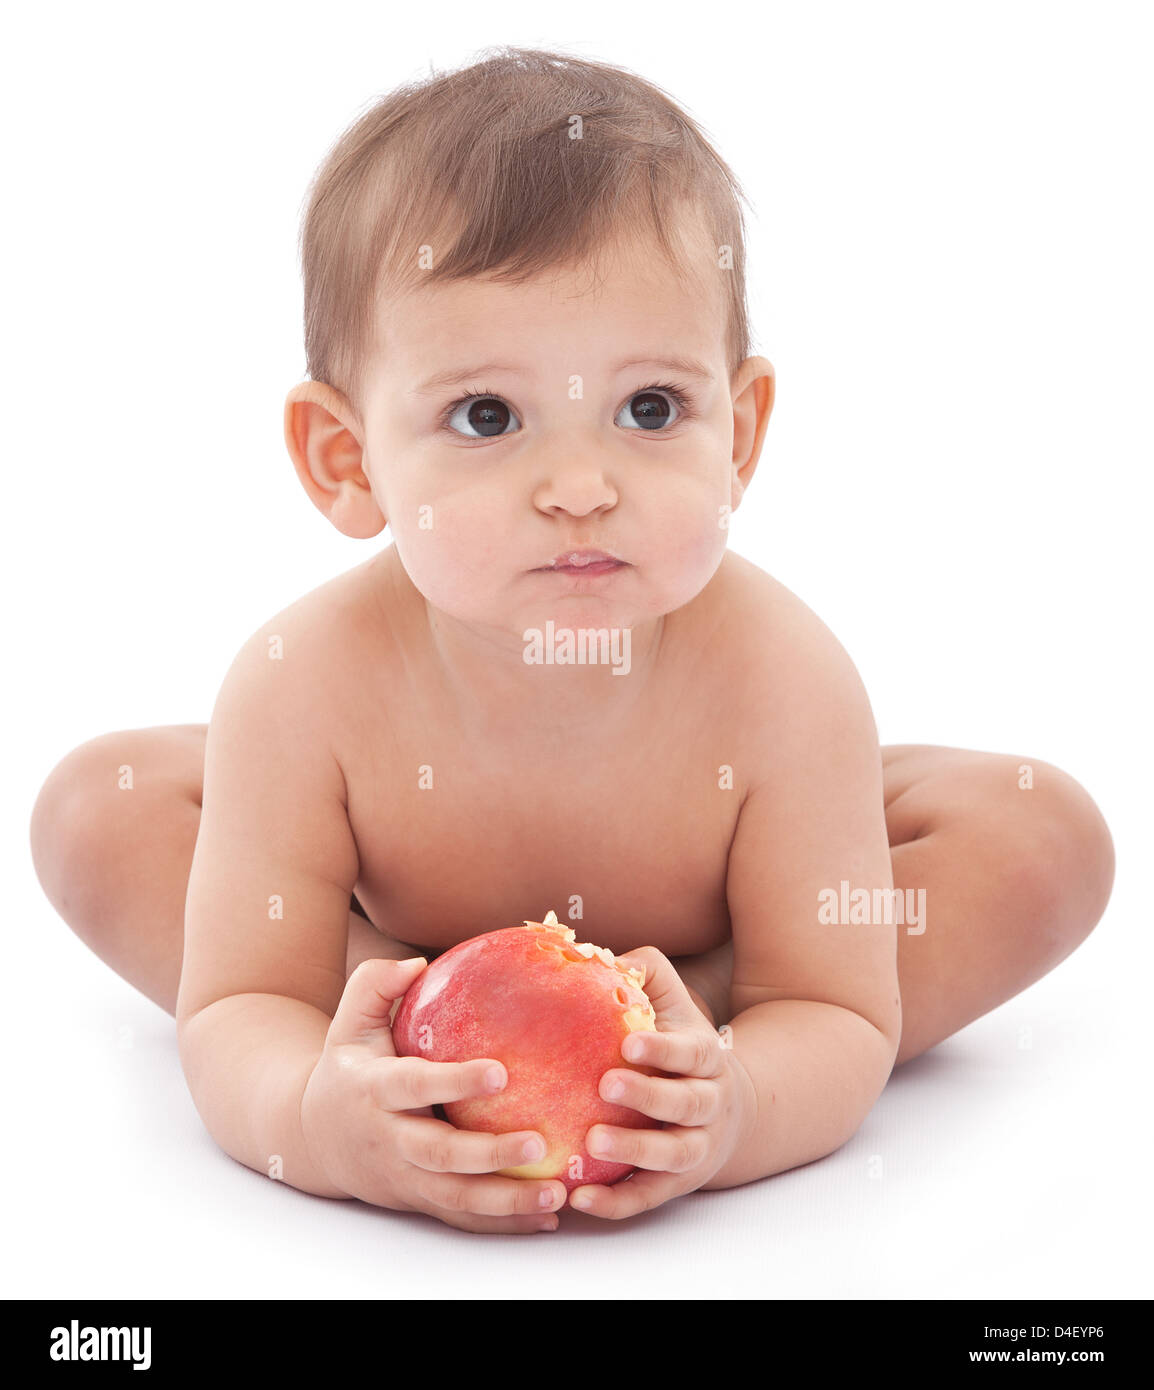 Bébé avec un drôle de big apple dans ses mains. Isolé sur fond blanc. Banque D'Images